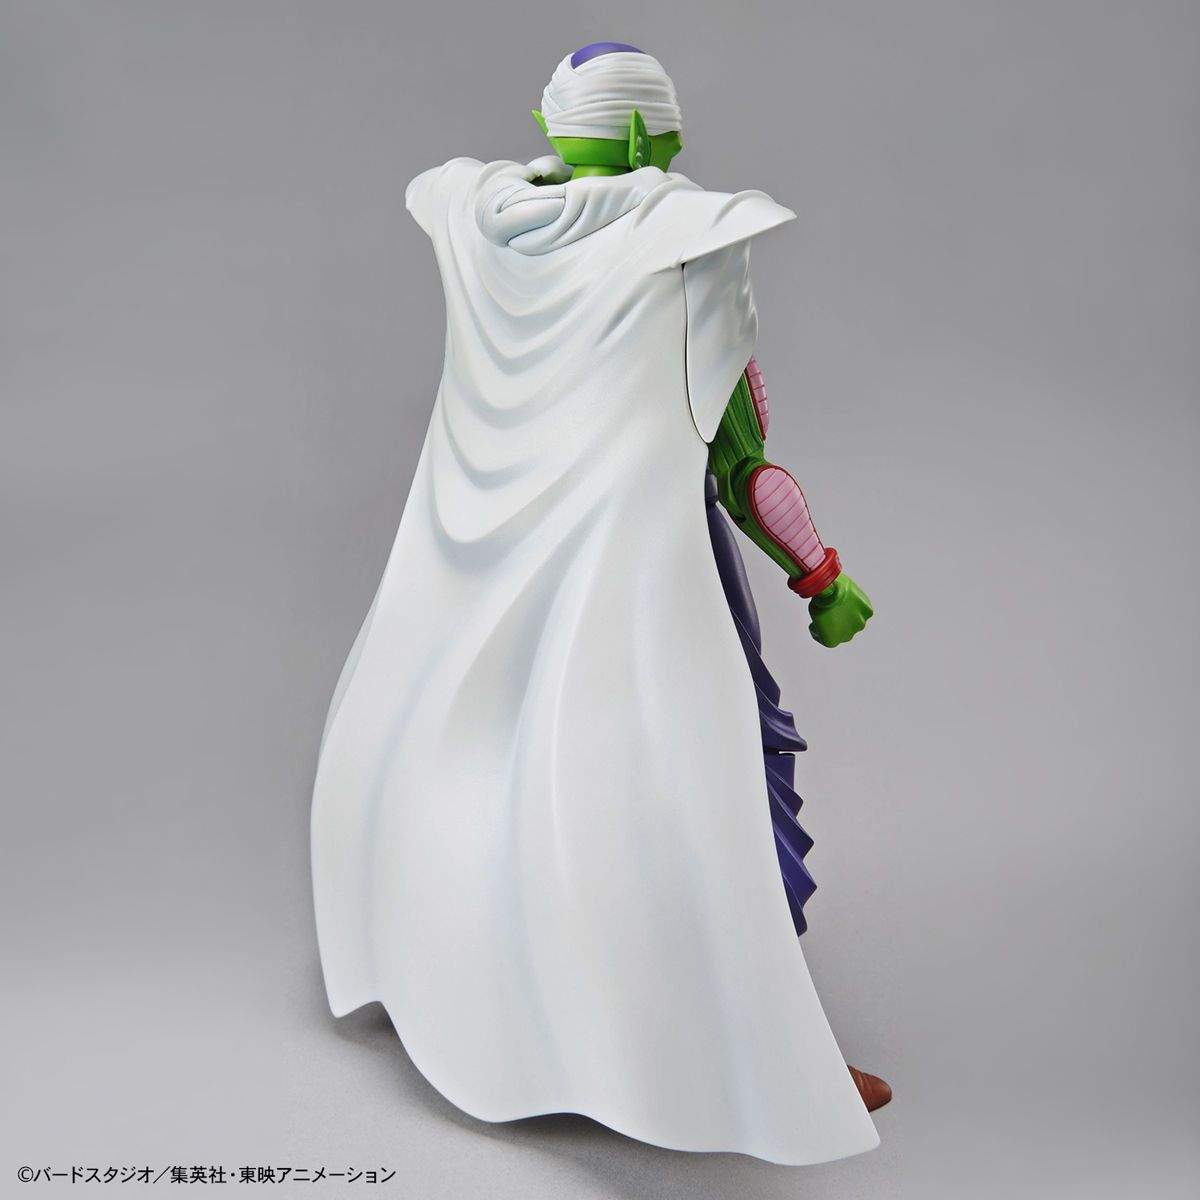 Dragon Ball - Figure-rise standard - Piccolo (repackage ver.)